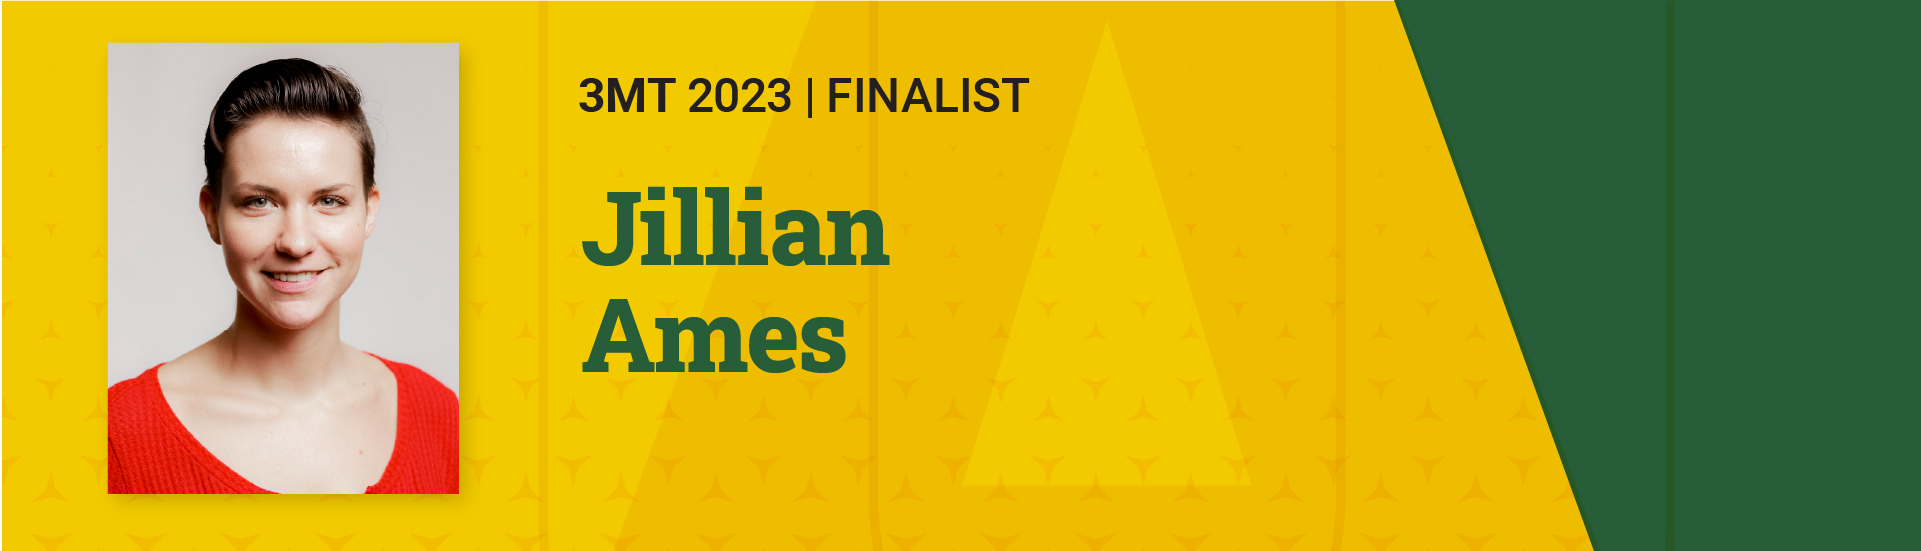 3MT 2023 Finalist  Jillian Ames 